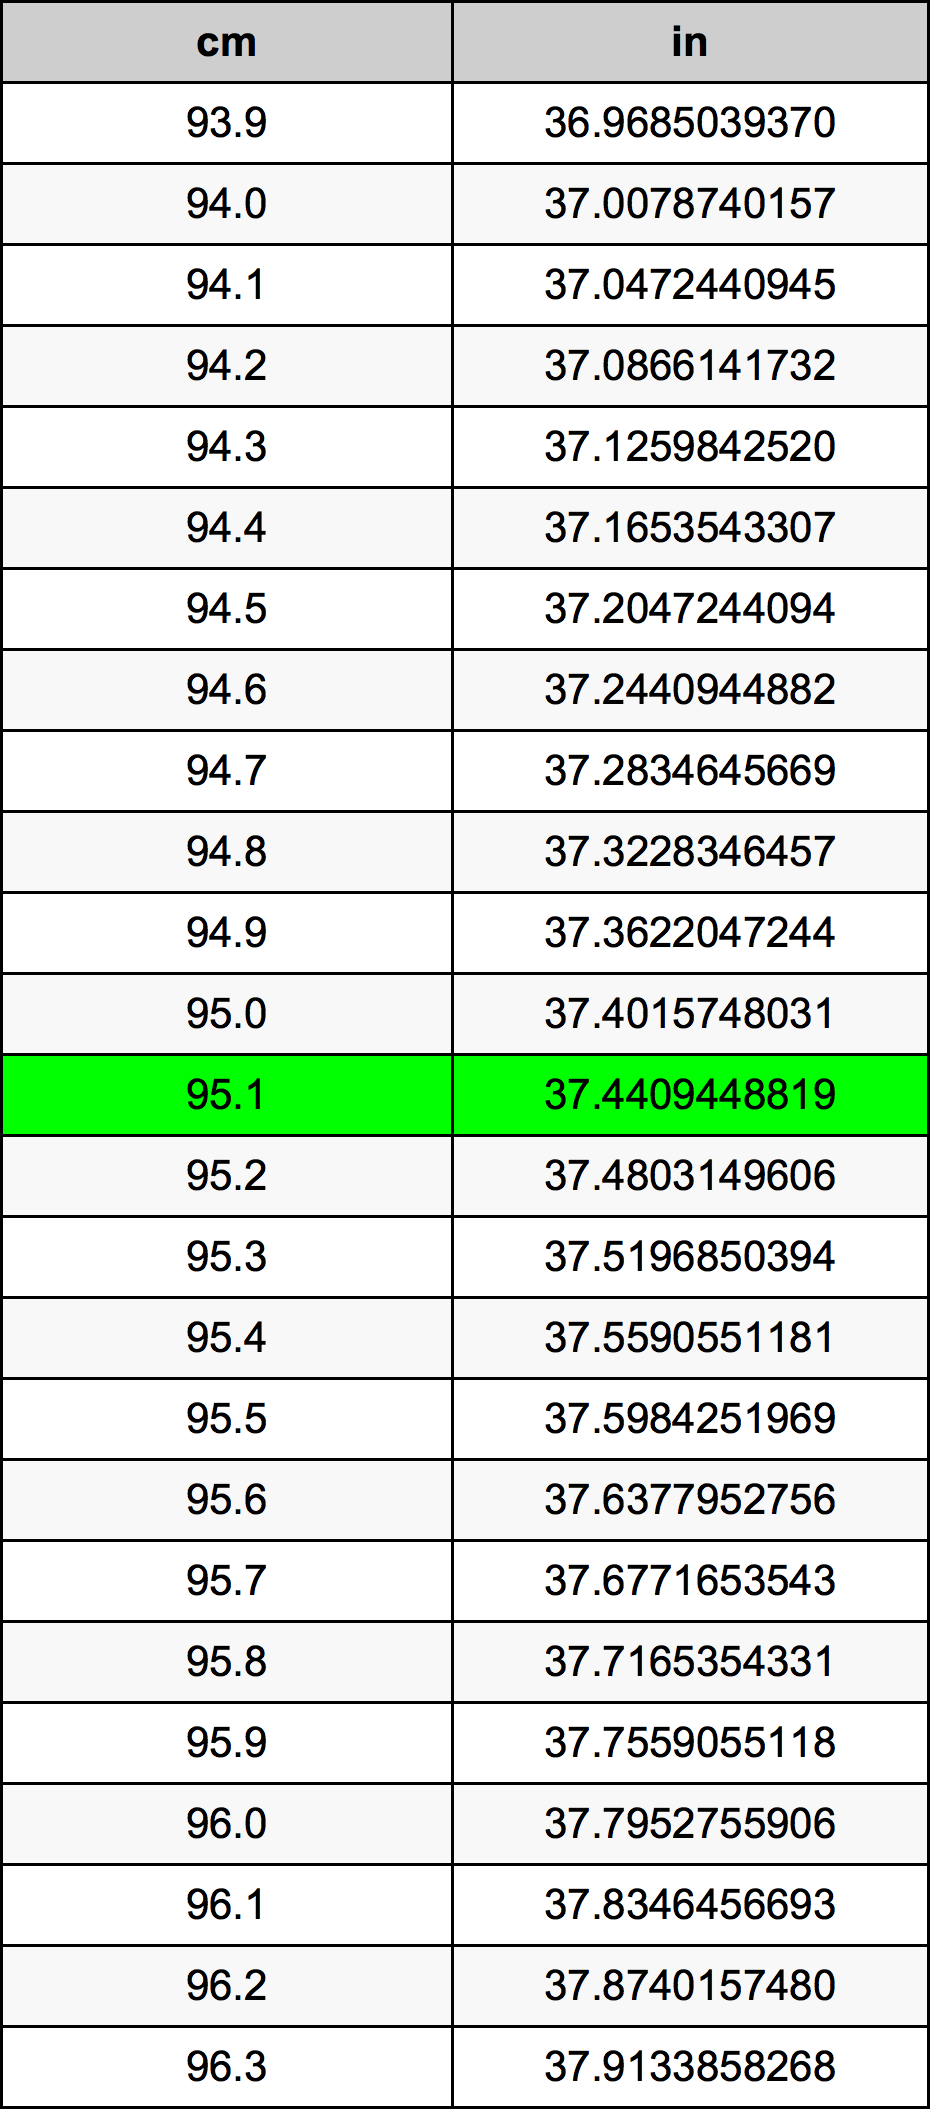 95.1 Centiméter átszámítási táblázat